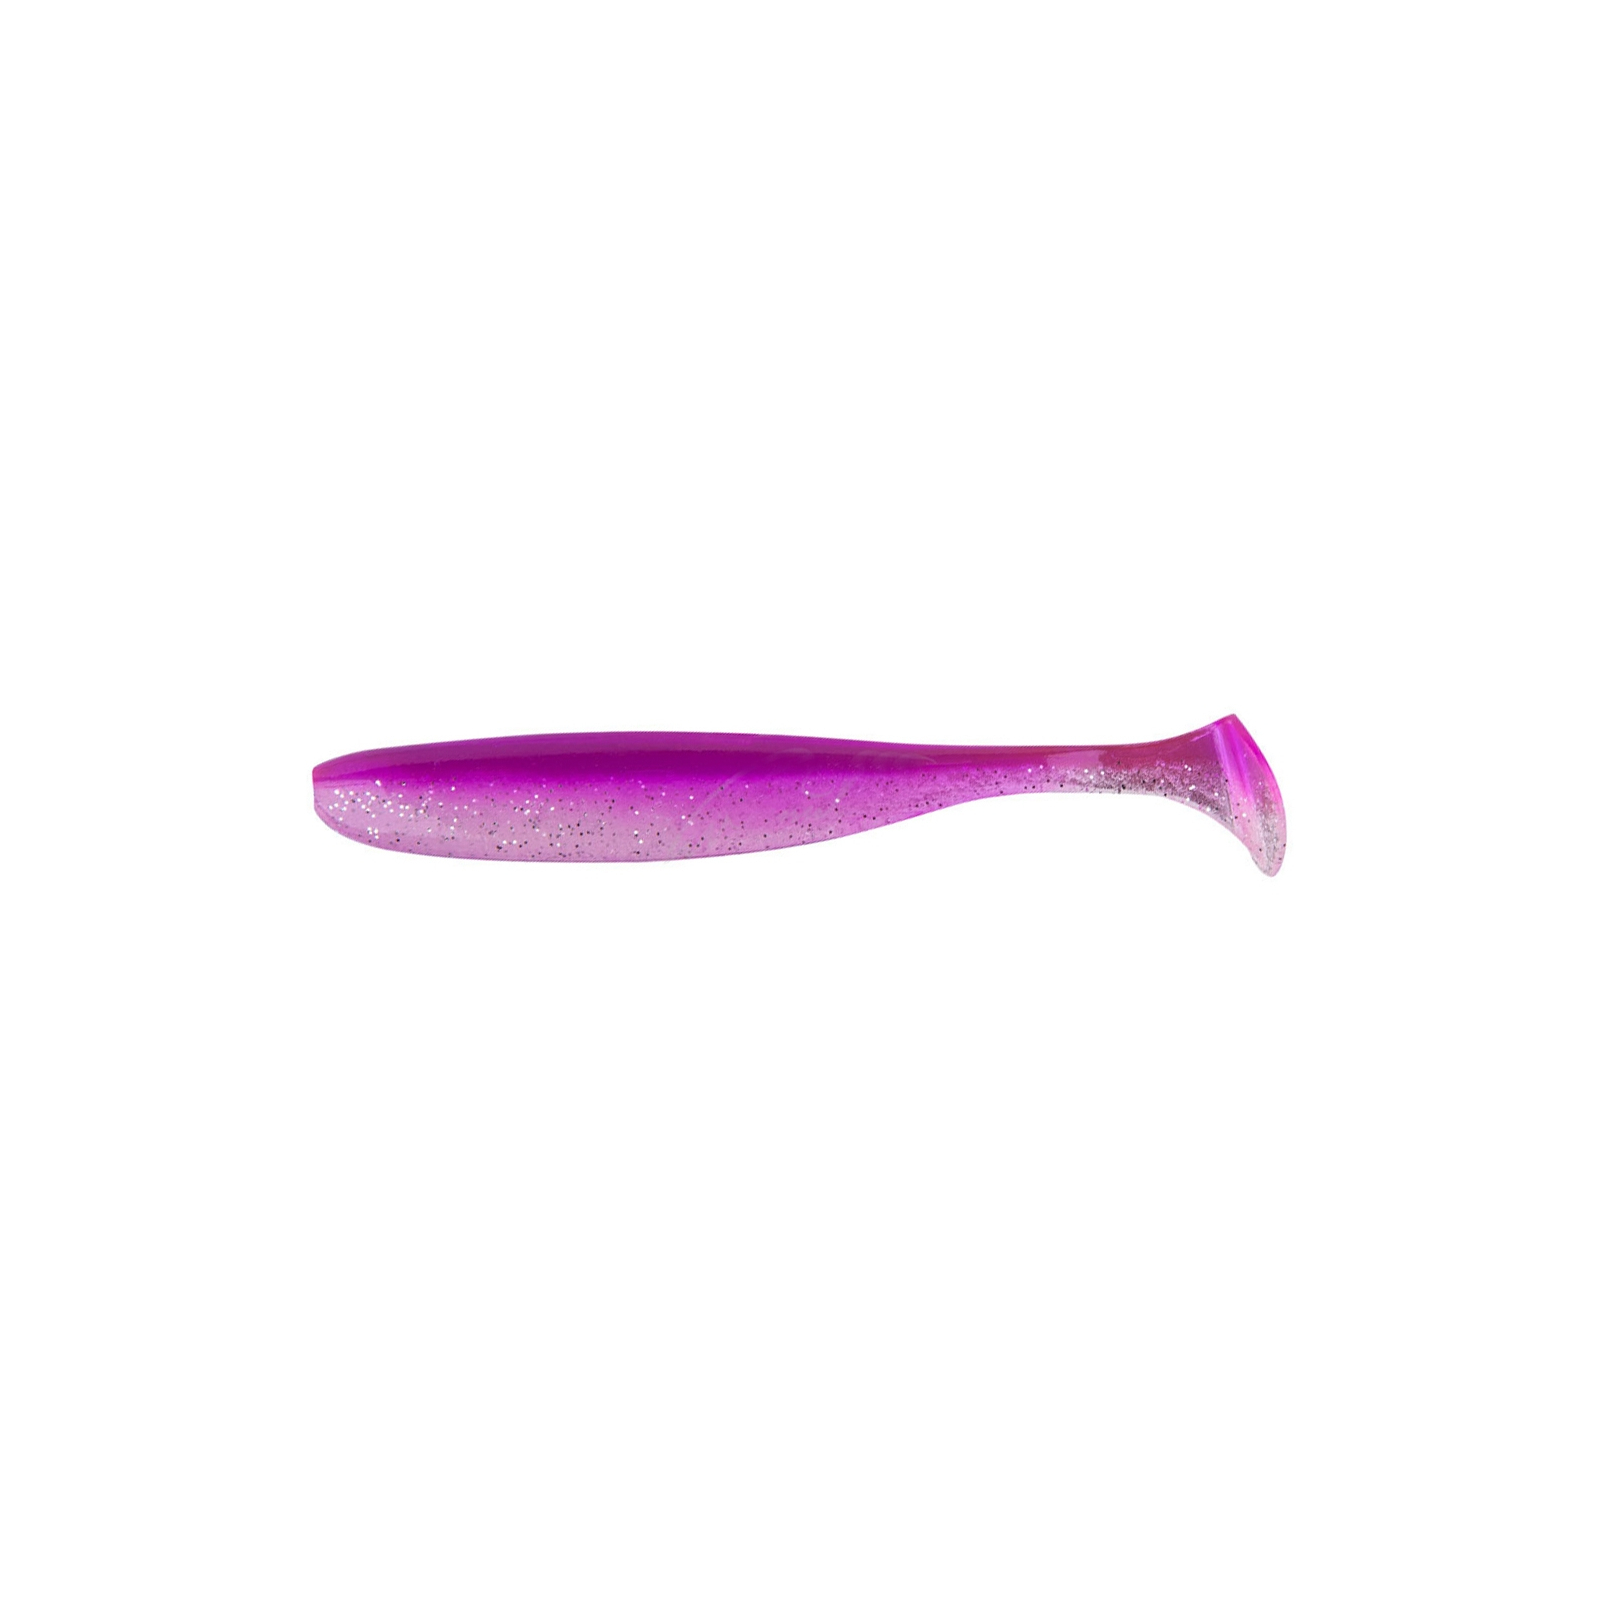 Силікон рибальський Keitech Easy Shiner 5" (5 шт/упак) ц:pal#14 glamorous pink (1551.09.90)